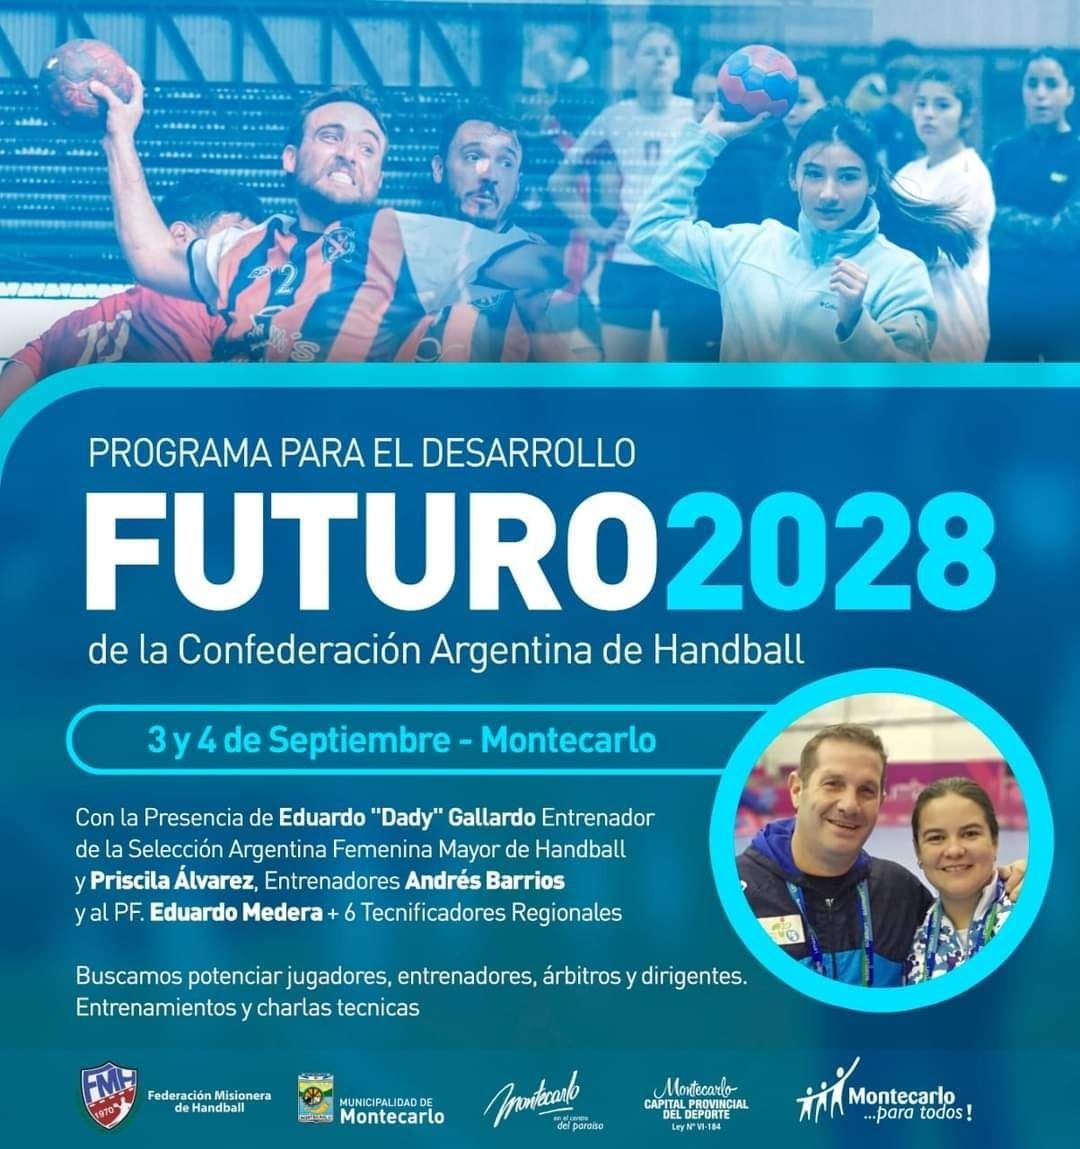 Llega a Montecarlo el Programa de Handball de la Confederación Argentina